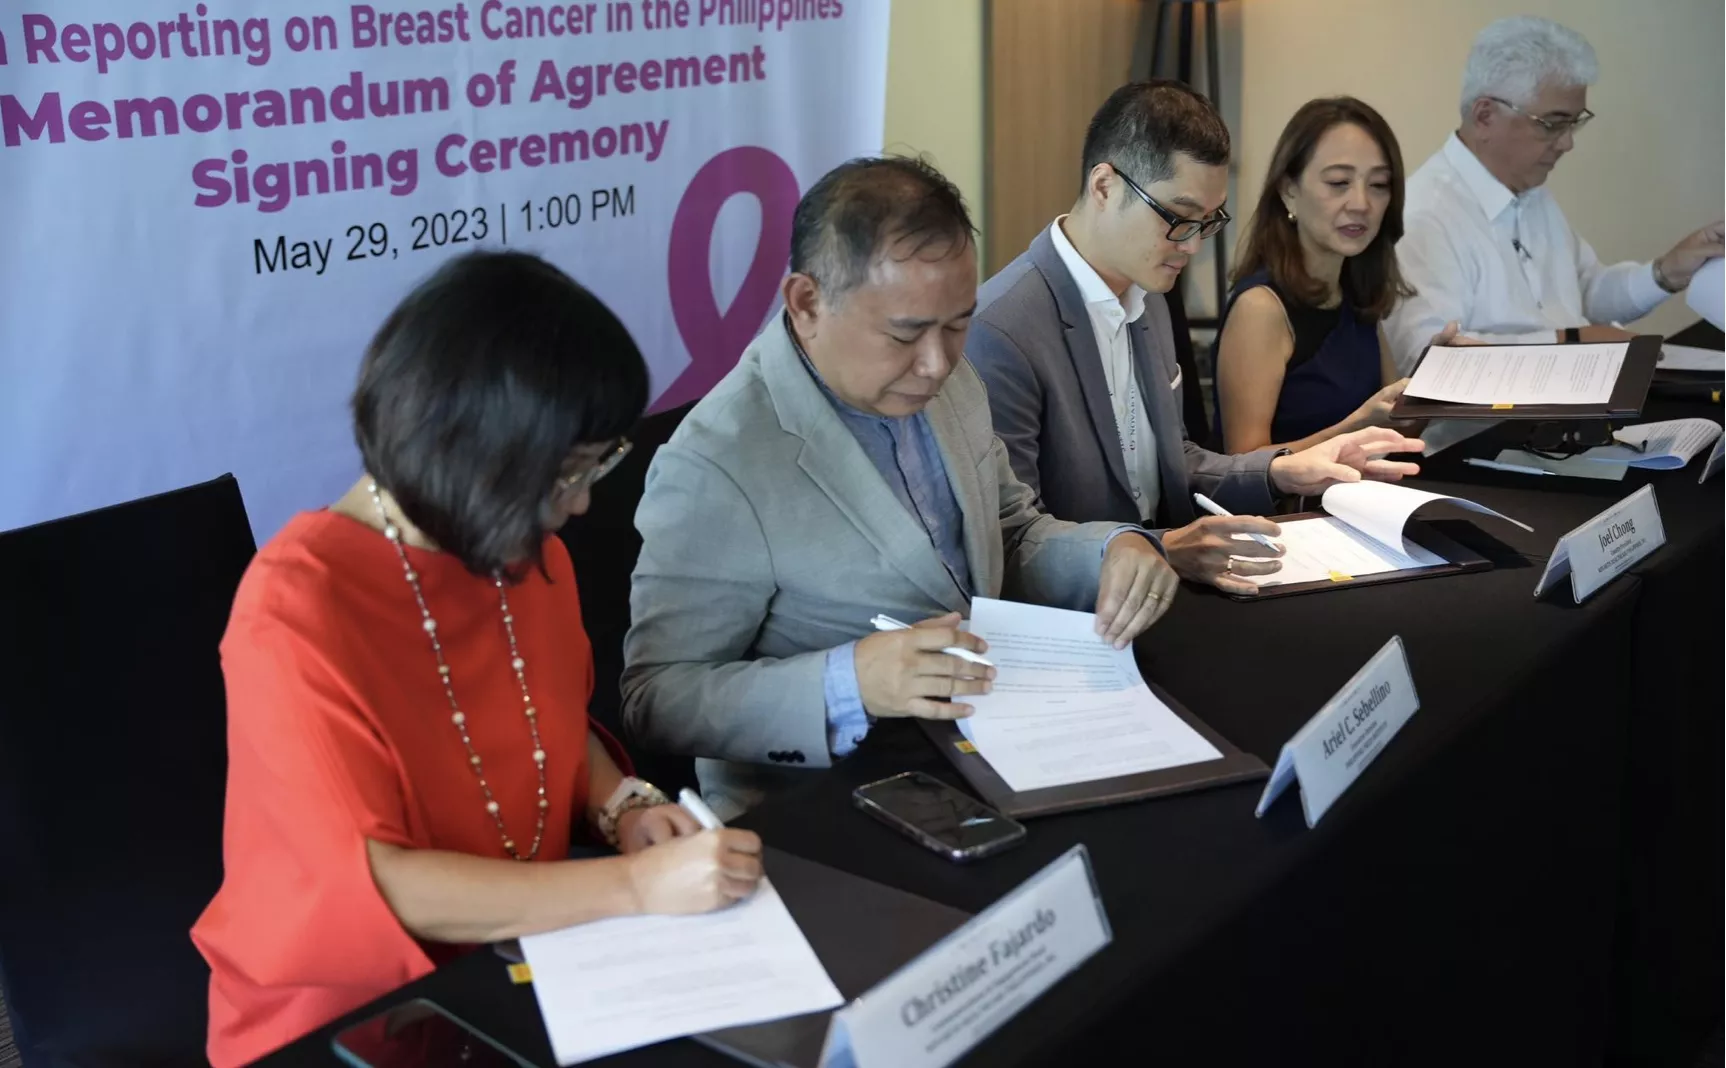 Novartis, Philippine Press Institute, ICanServe Foundation partner on media workshop to enhance breast cancer knowledge